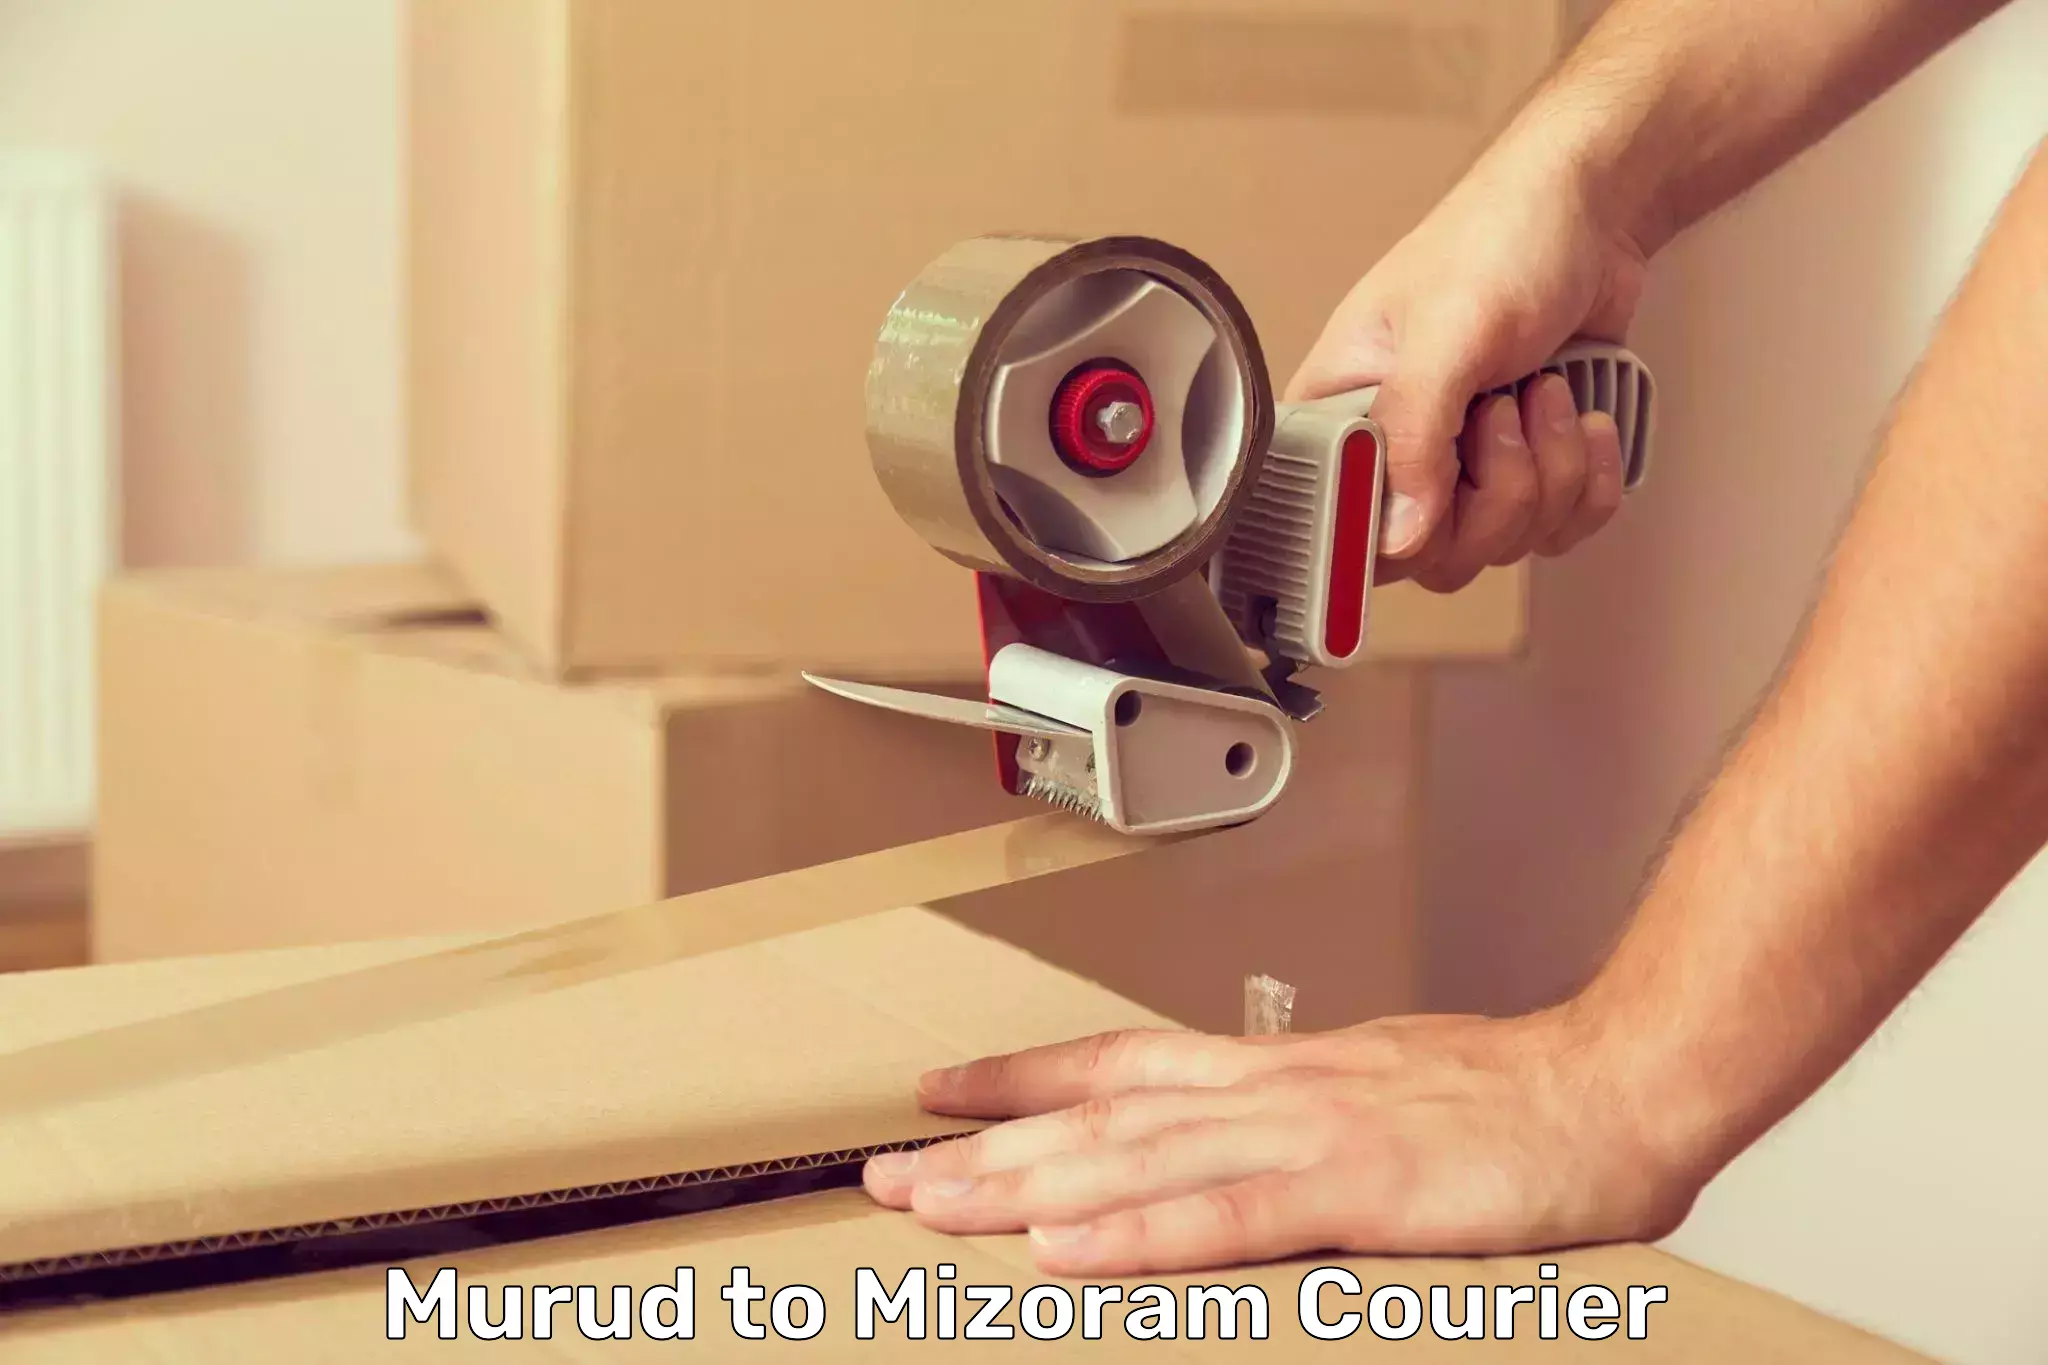 Quick parcel dispatch Murud to Mizoram